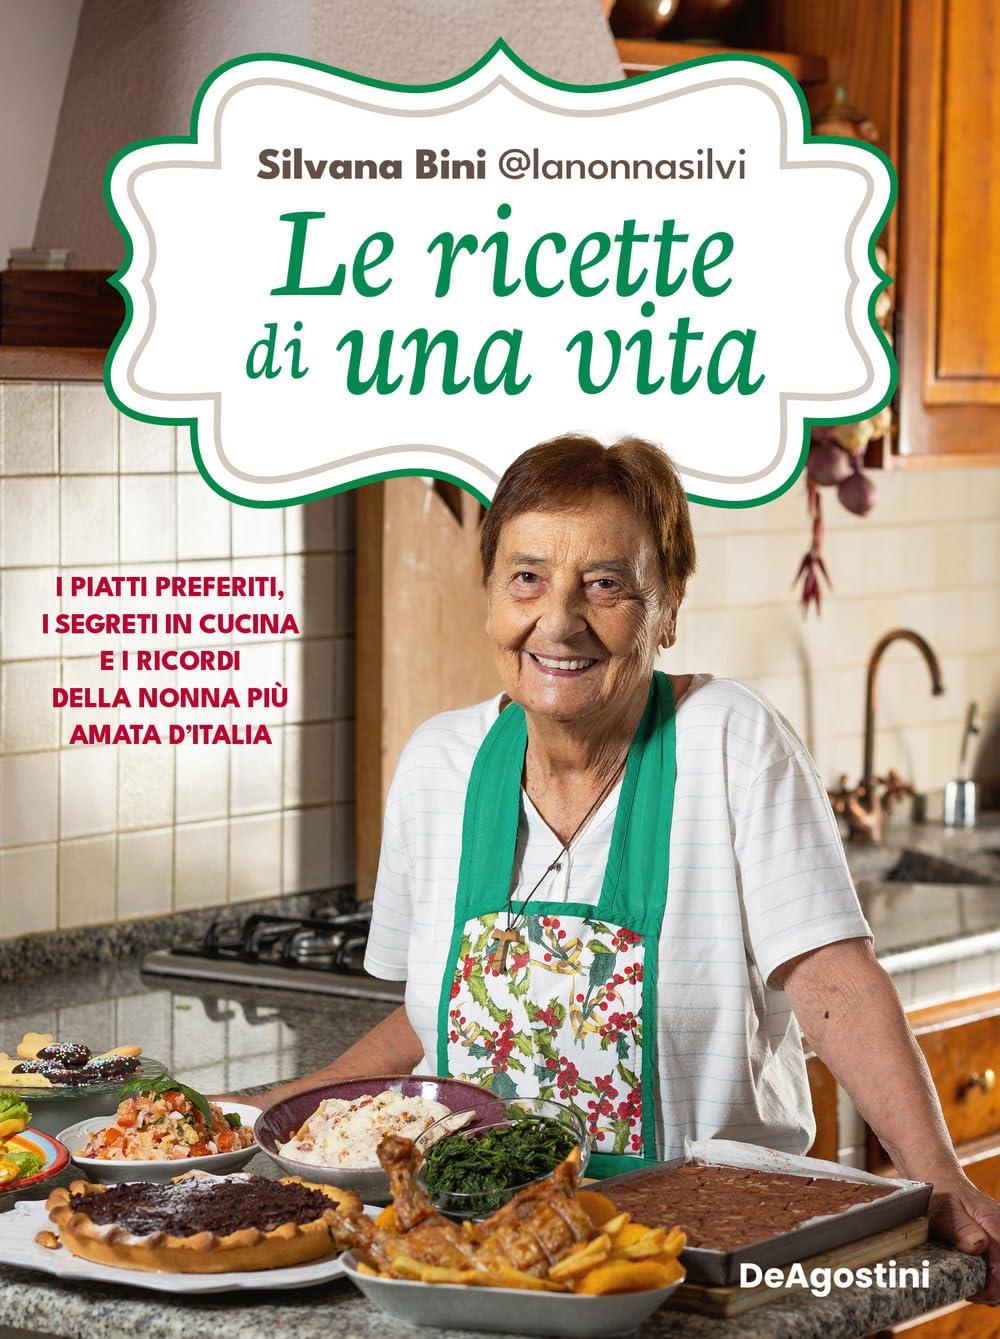 Le ricette di una vita di Silvana Bini @lanonnasilvi, Libri